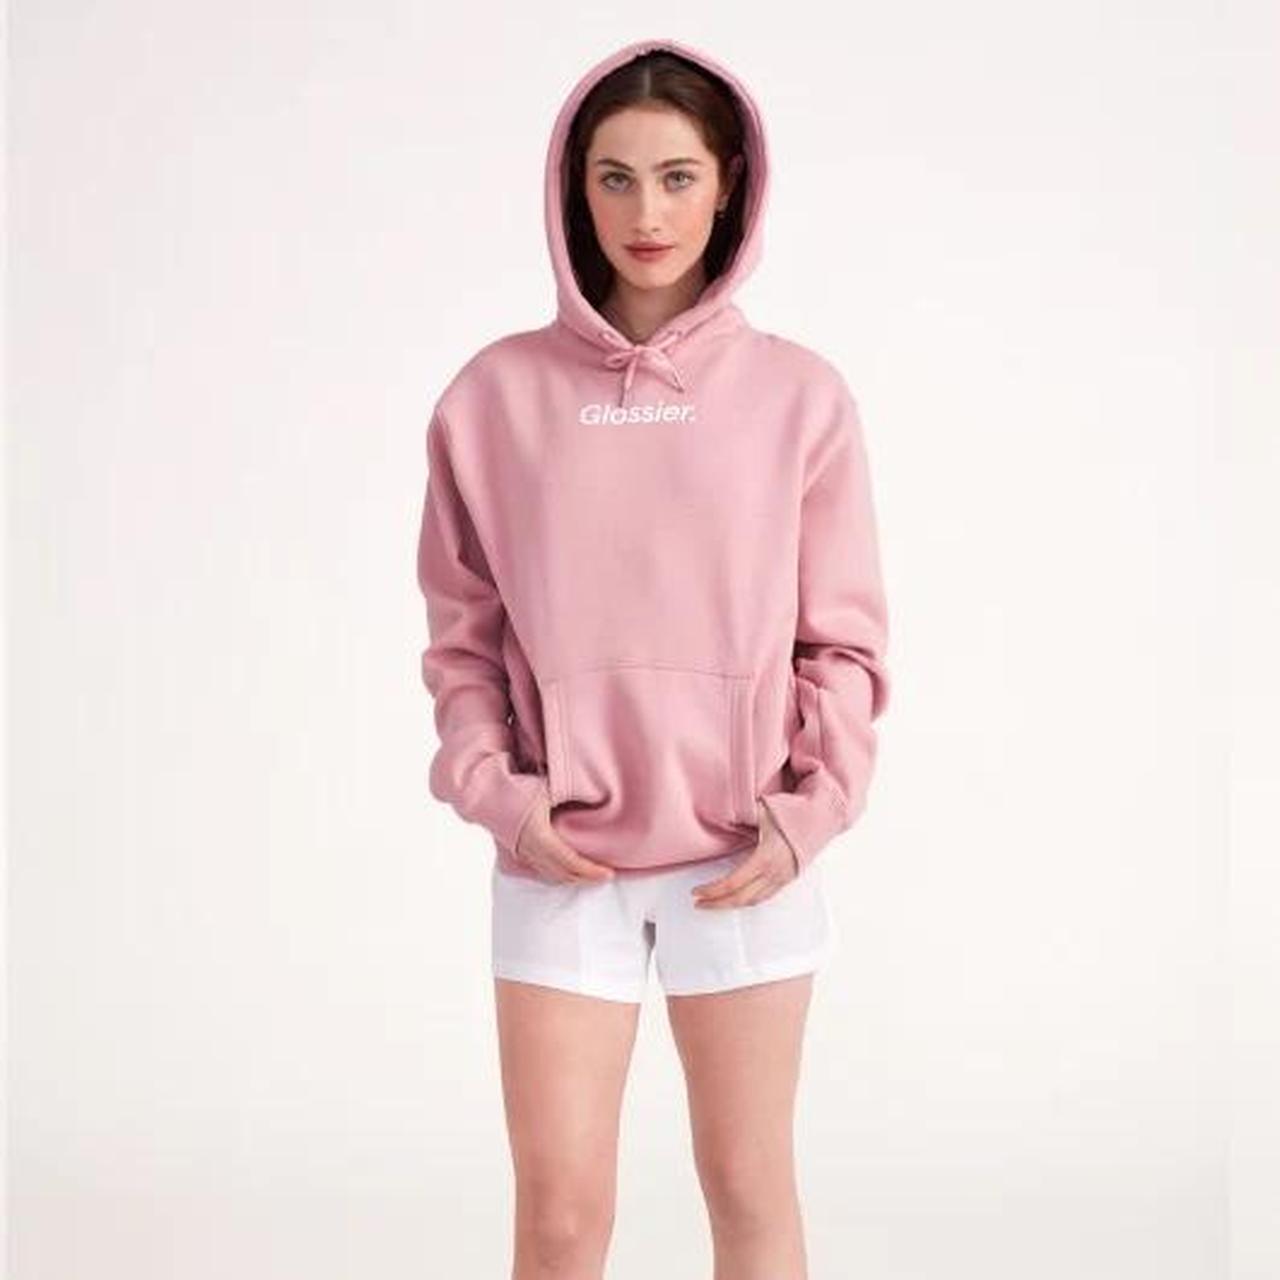 Glossier Women's Pink Hoodie | Depop